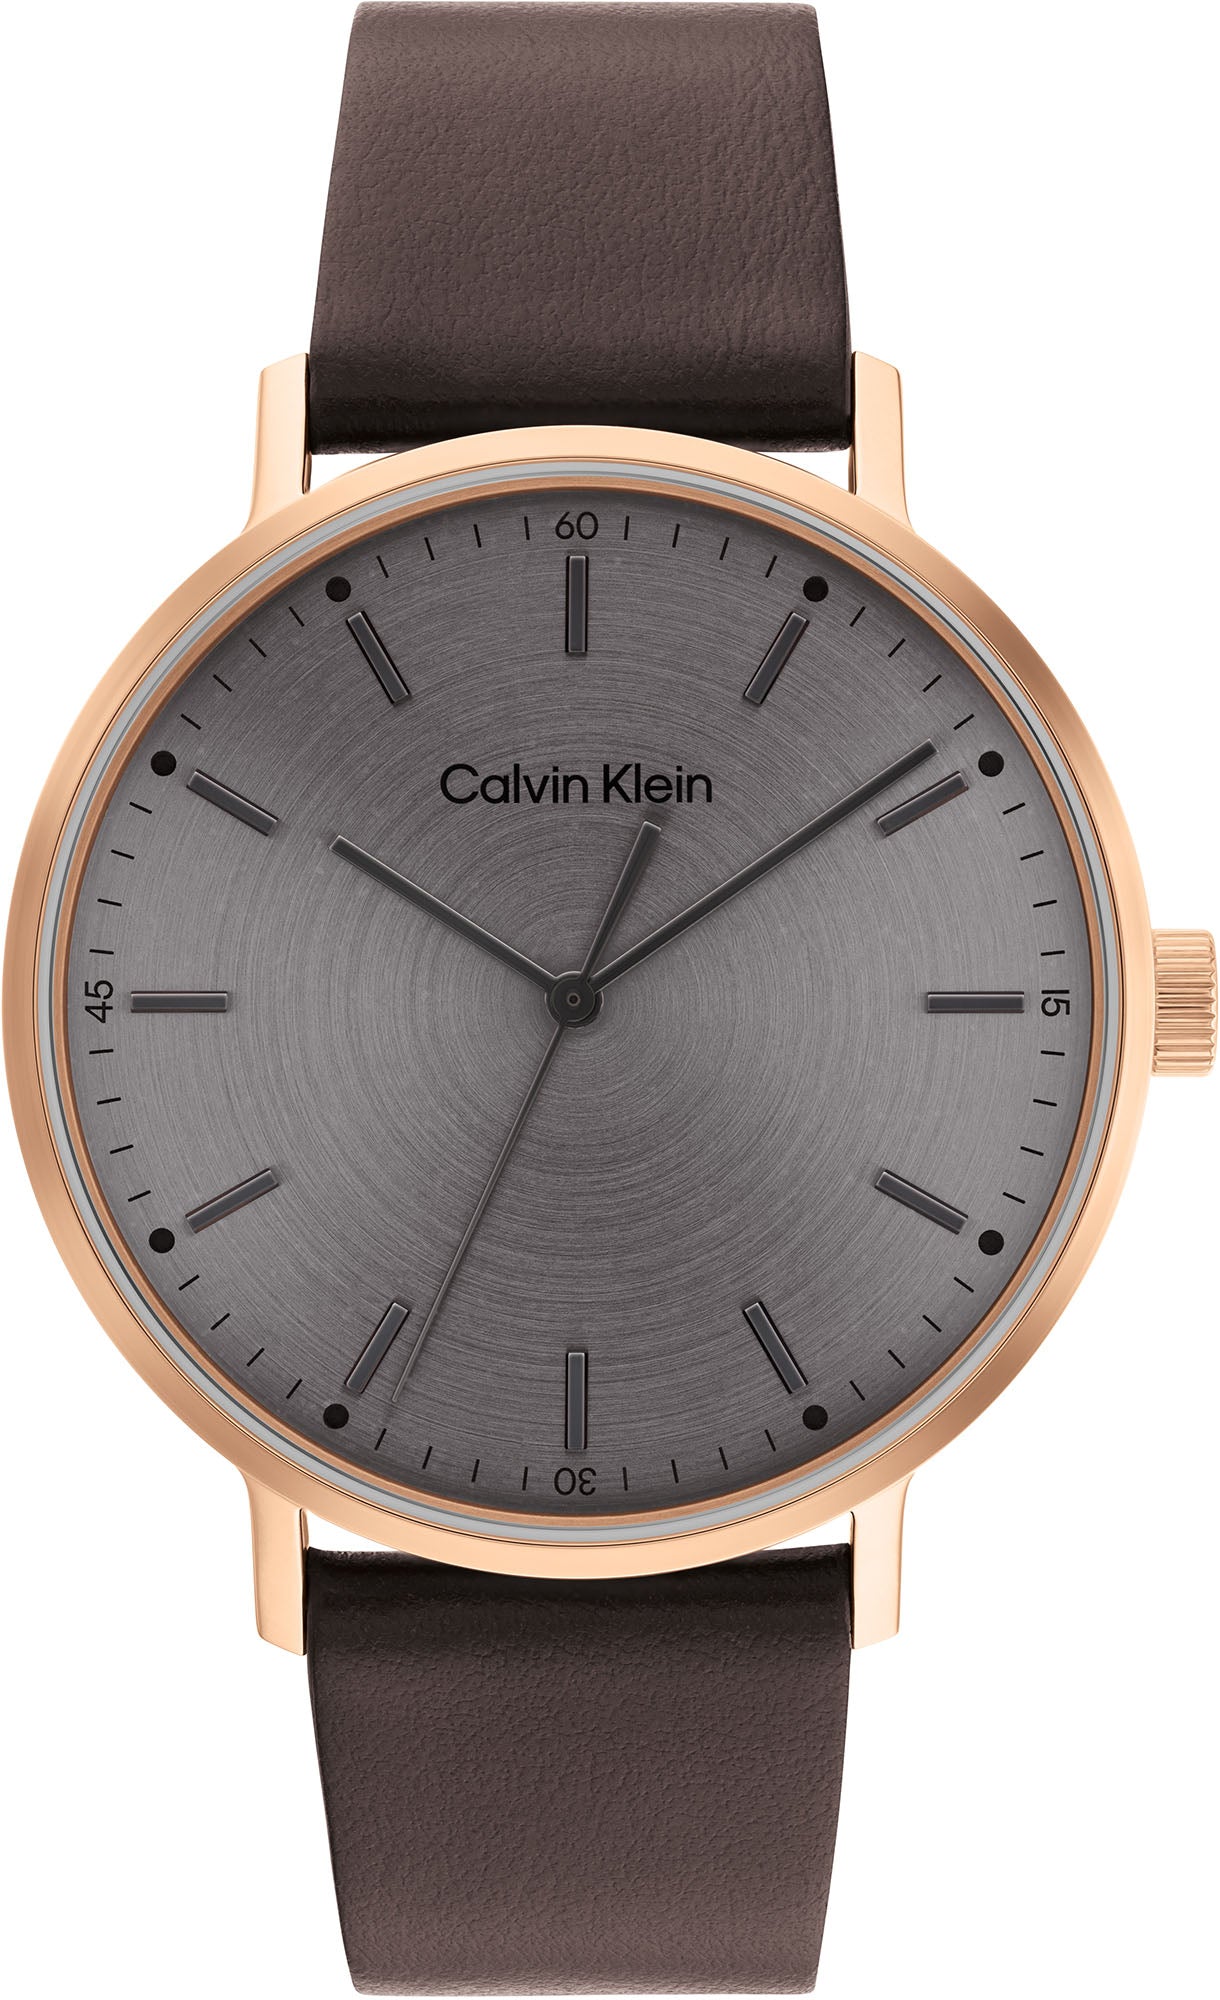 Photos - Wrist Watch Calvin Klein Watch Mens D CLK-031 